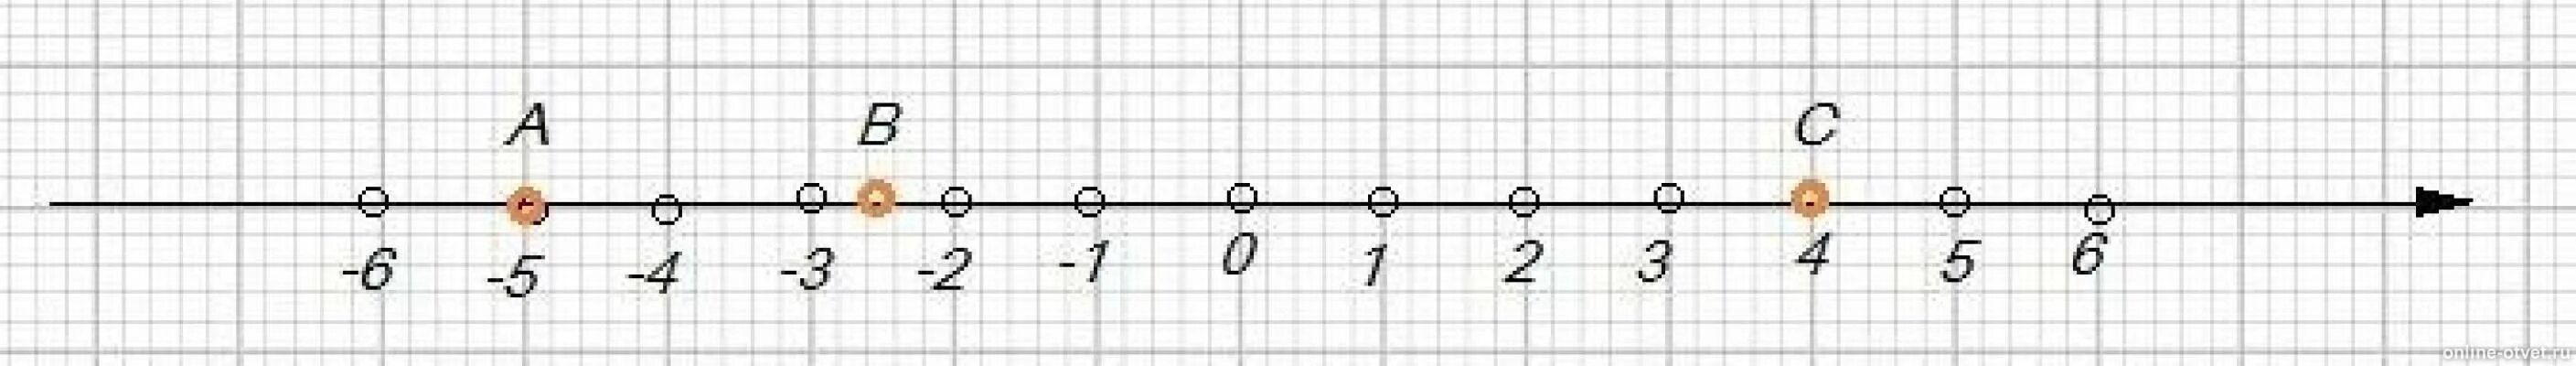 Изобразите на координатной прямой точки а -5 в -2.5 с 4. Изобразите на координатной прямой точки. Изобразите на координатной прямой точки а - 4. Изобразите на координатной прямой точки 1 2/5.